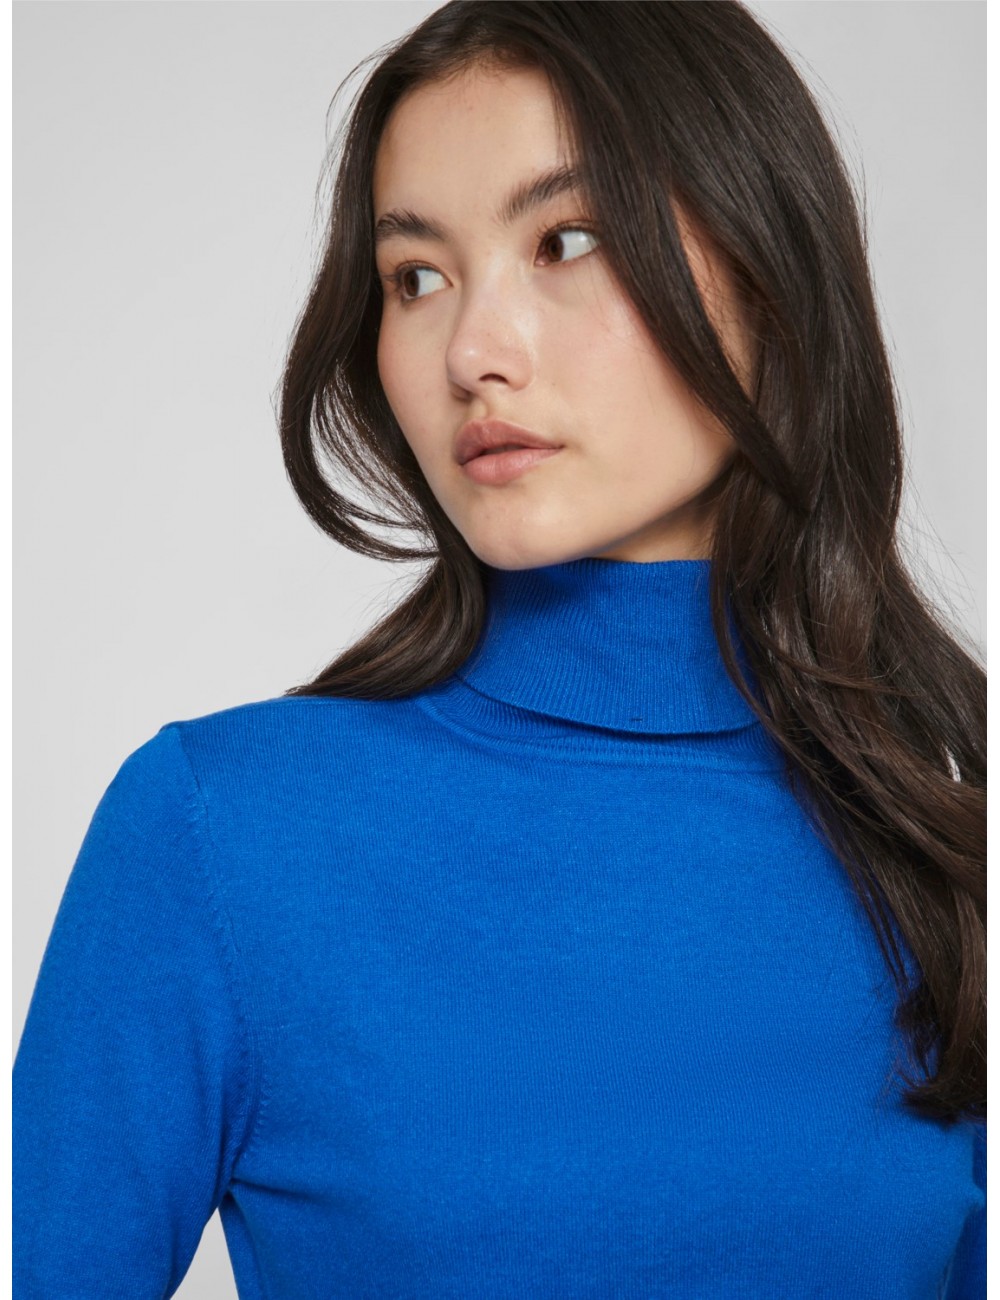 Jersey Comfy en color azul, básico de punto fino y de cuello alto. Marca Vila.